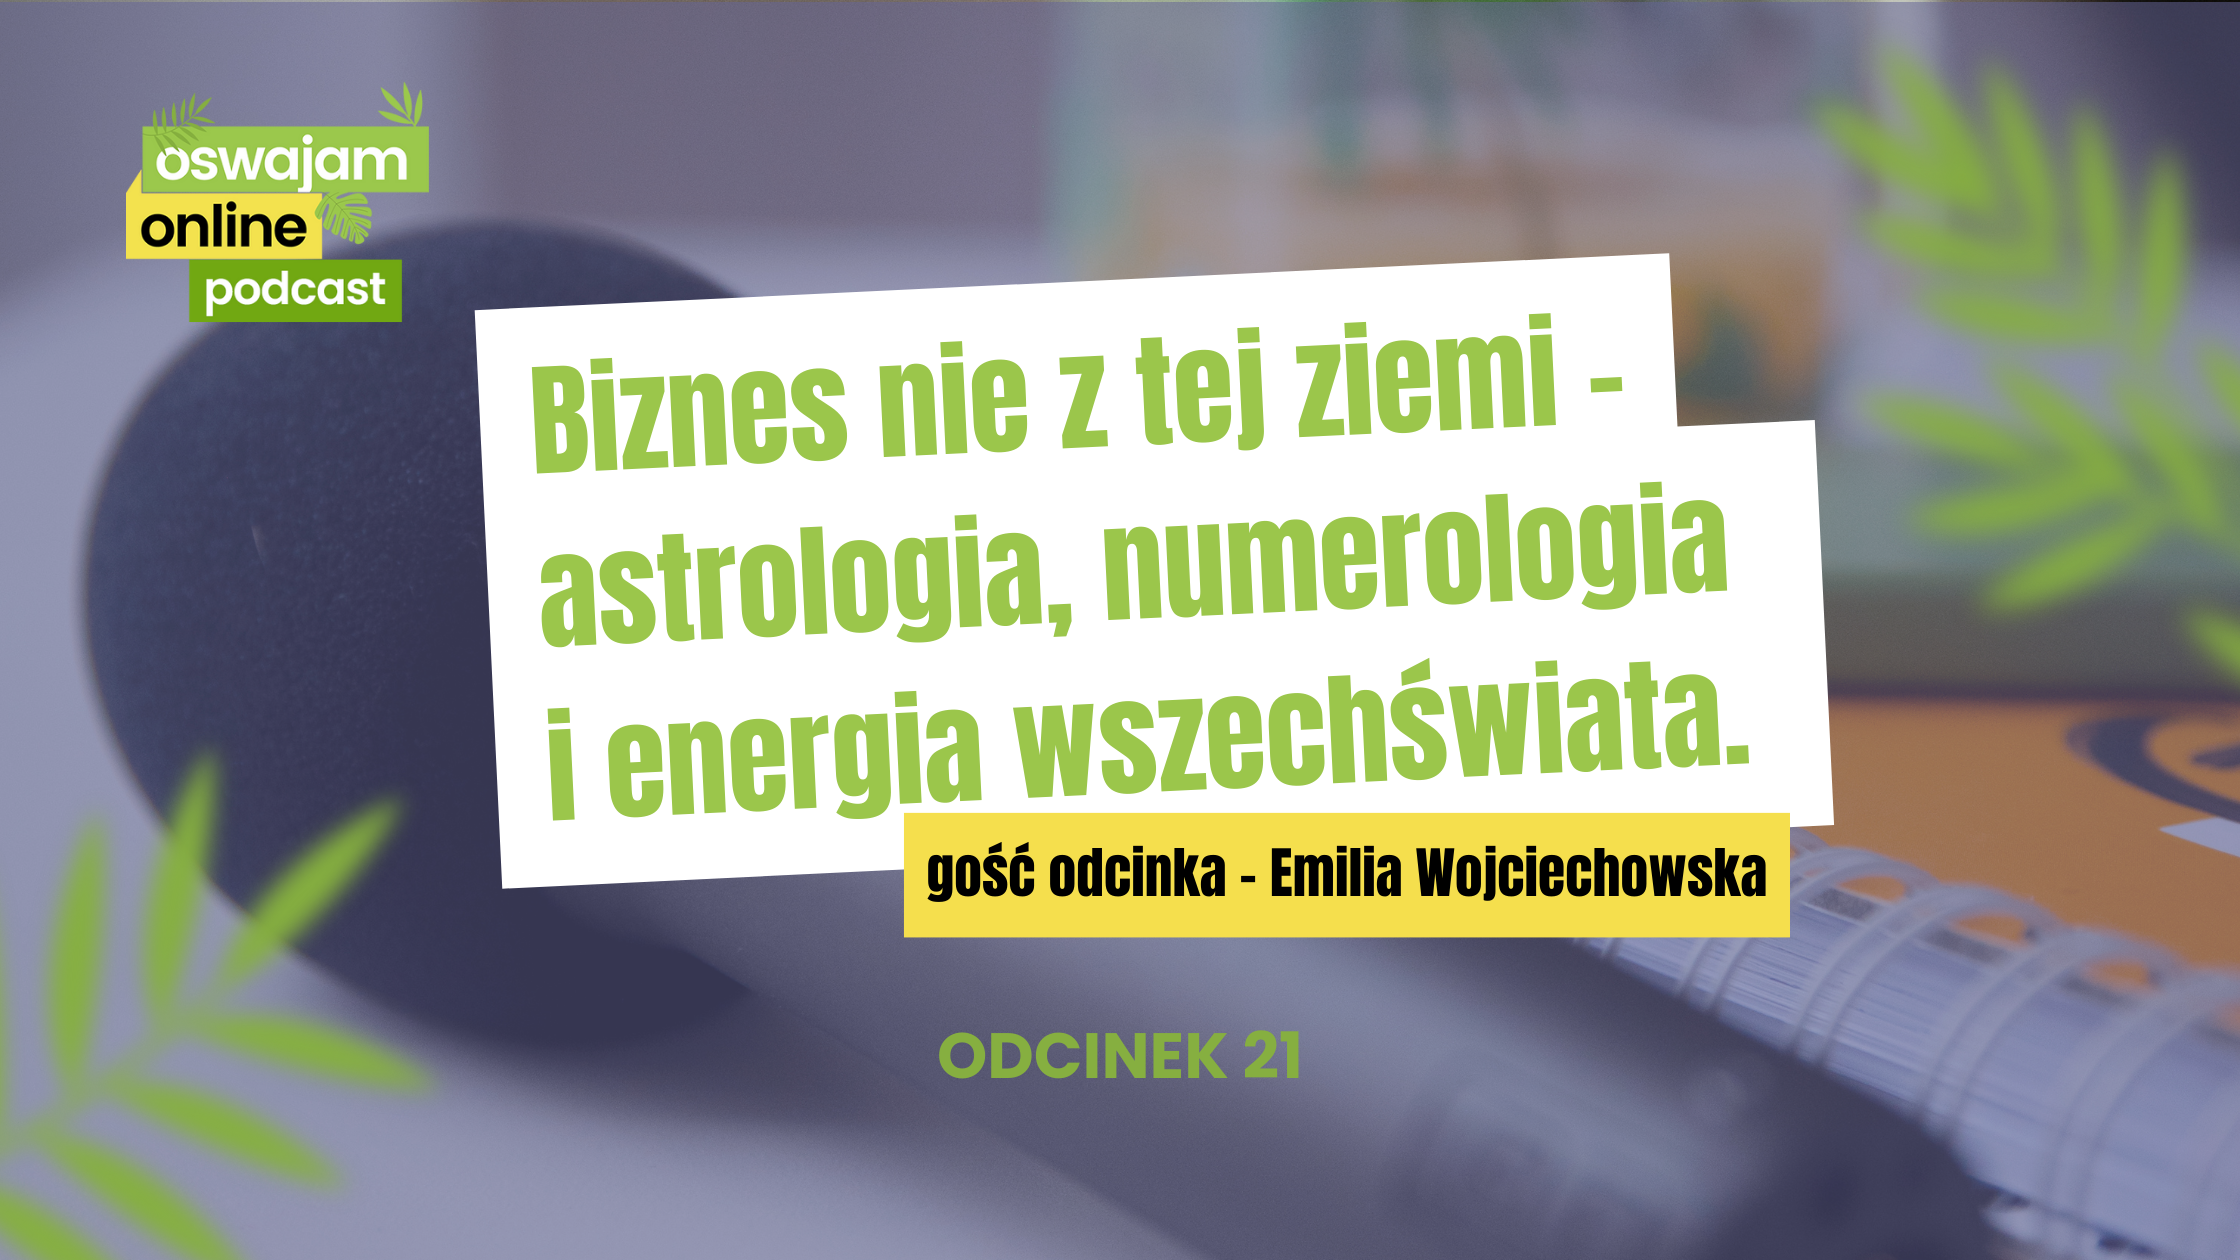 Biznes nie z tej ziemi - astrologia, numerologia i energia wszechświata. Rozmowa z Emilią Wojciechowską.